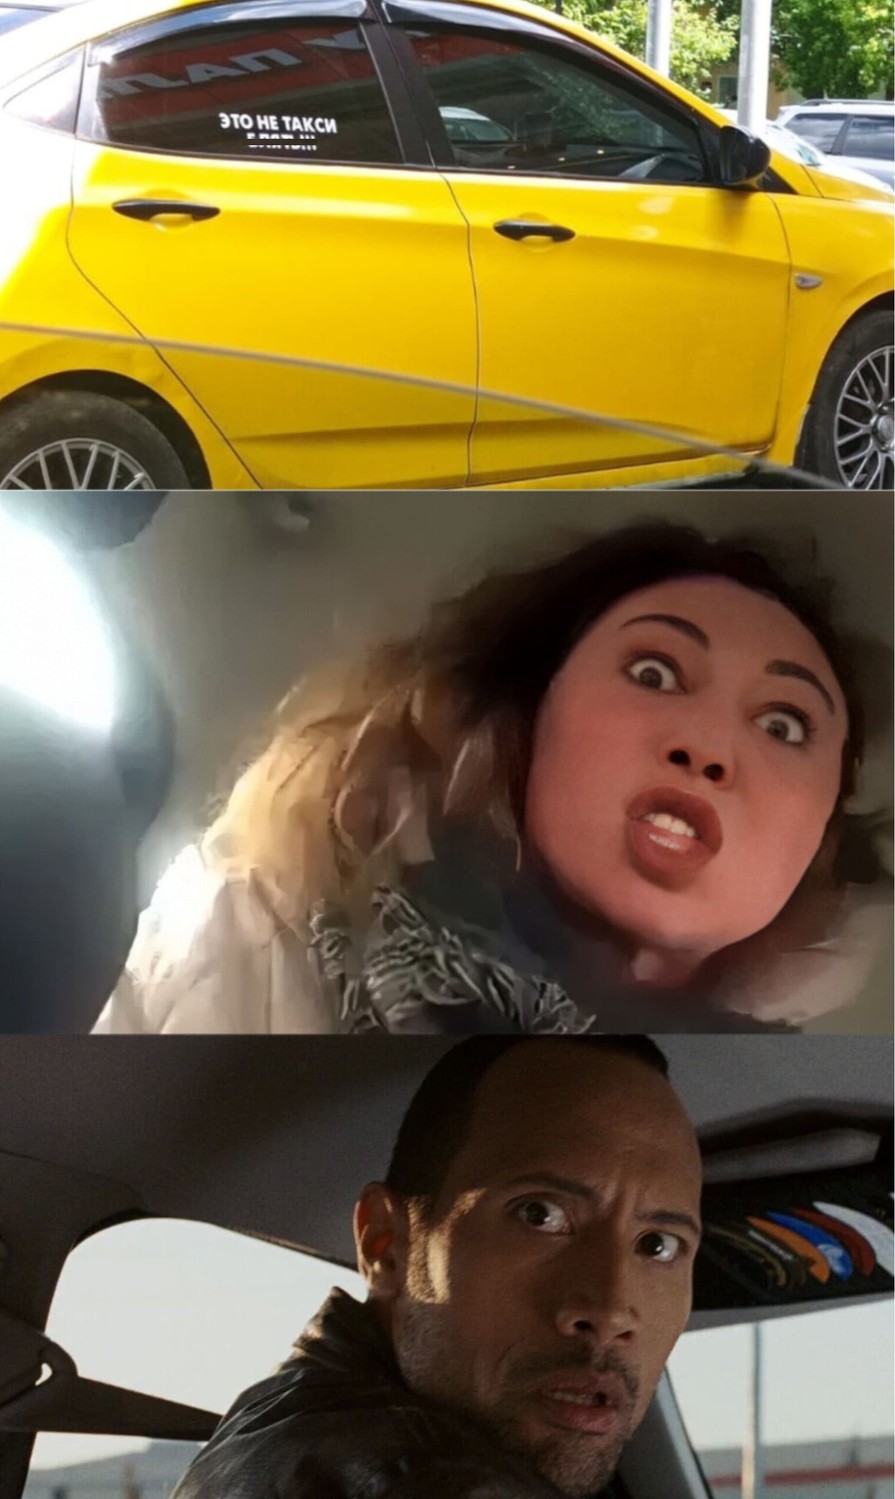 Надпись на жёлтом автомобиле: «Это не такси! ***!!!»
*Вези меня, мразь! Меня люди ждут!!!*